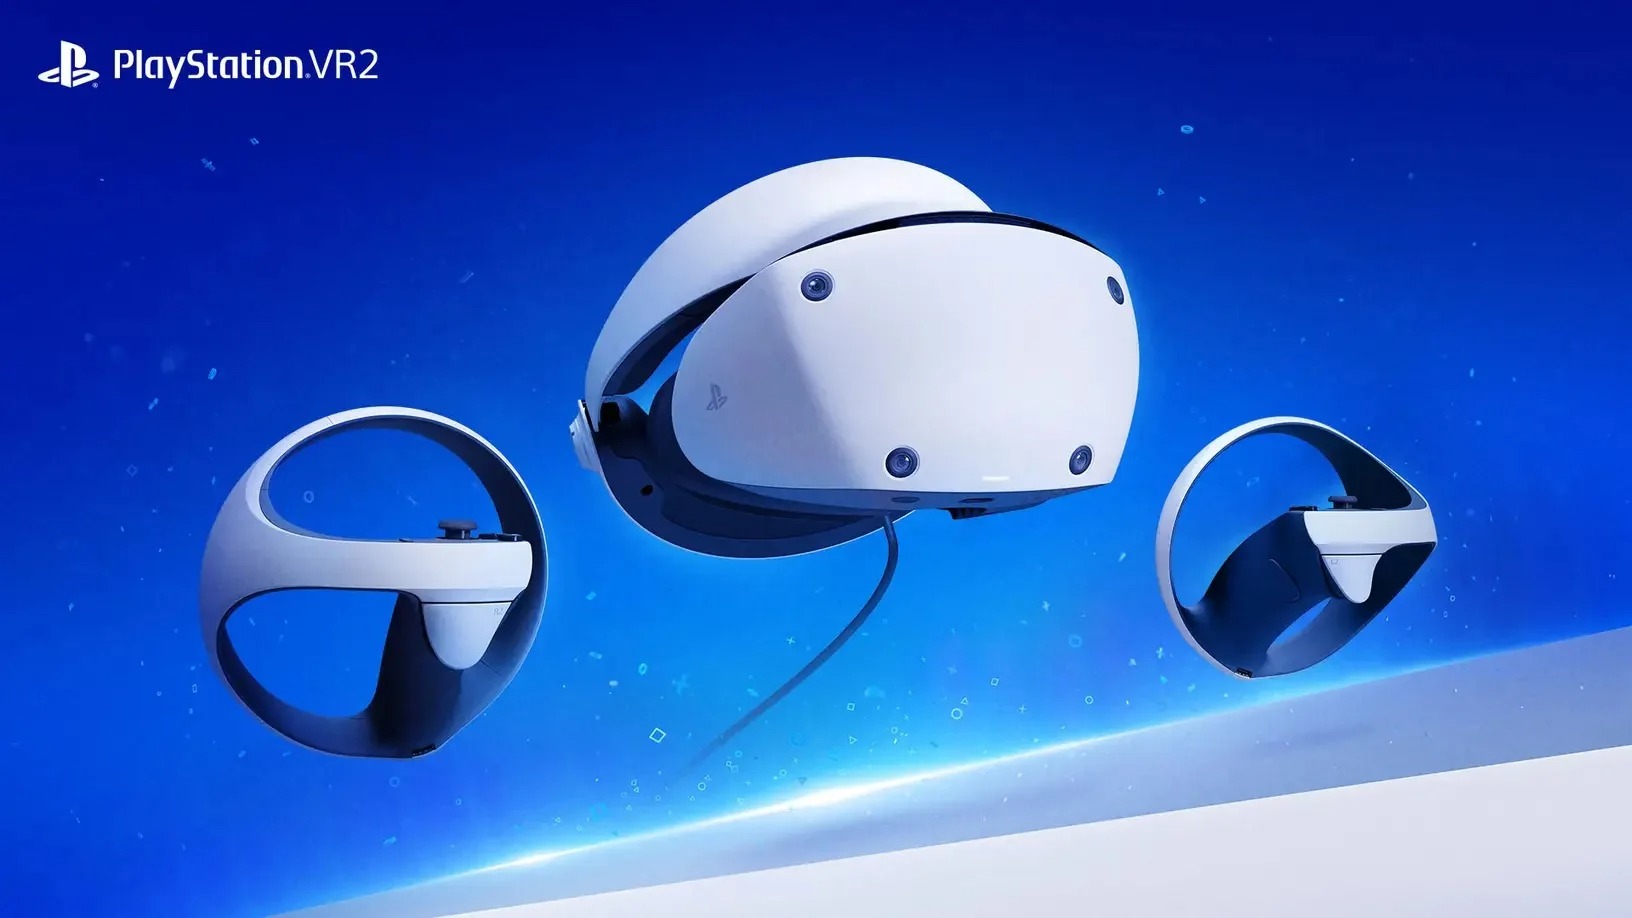 جیم رایان: هنوز برای قضاوت درباره محبوبیت PS VR2 زود است